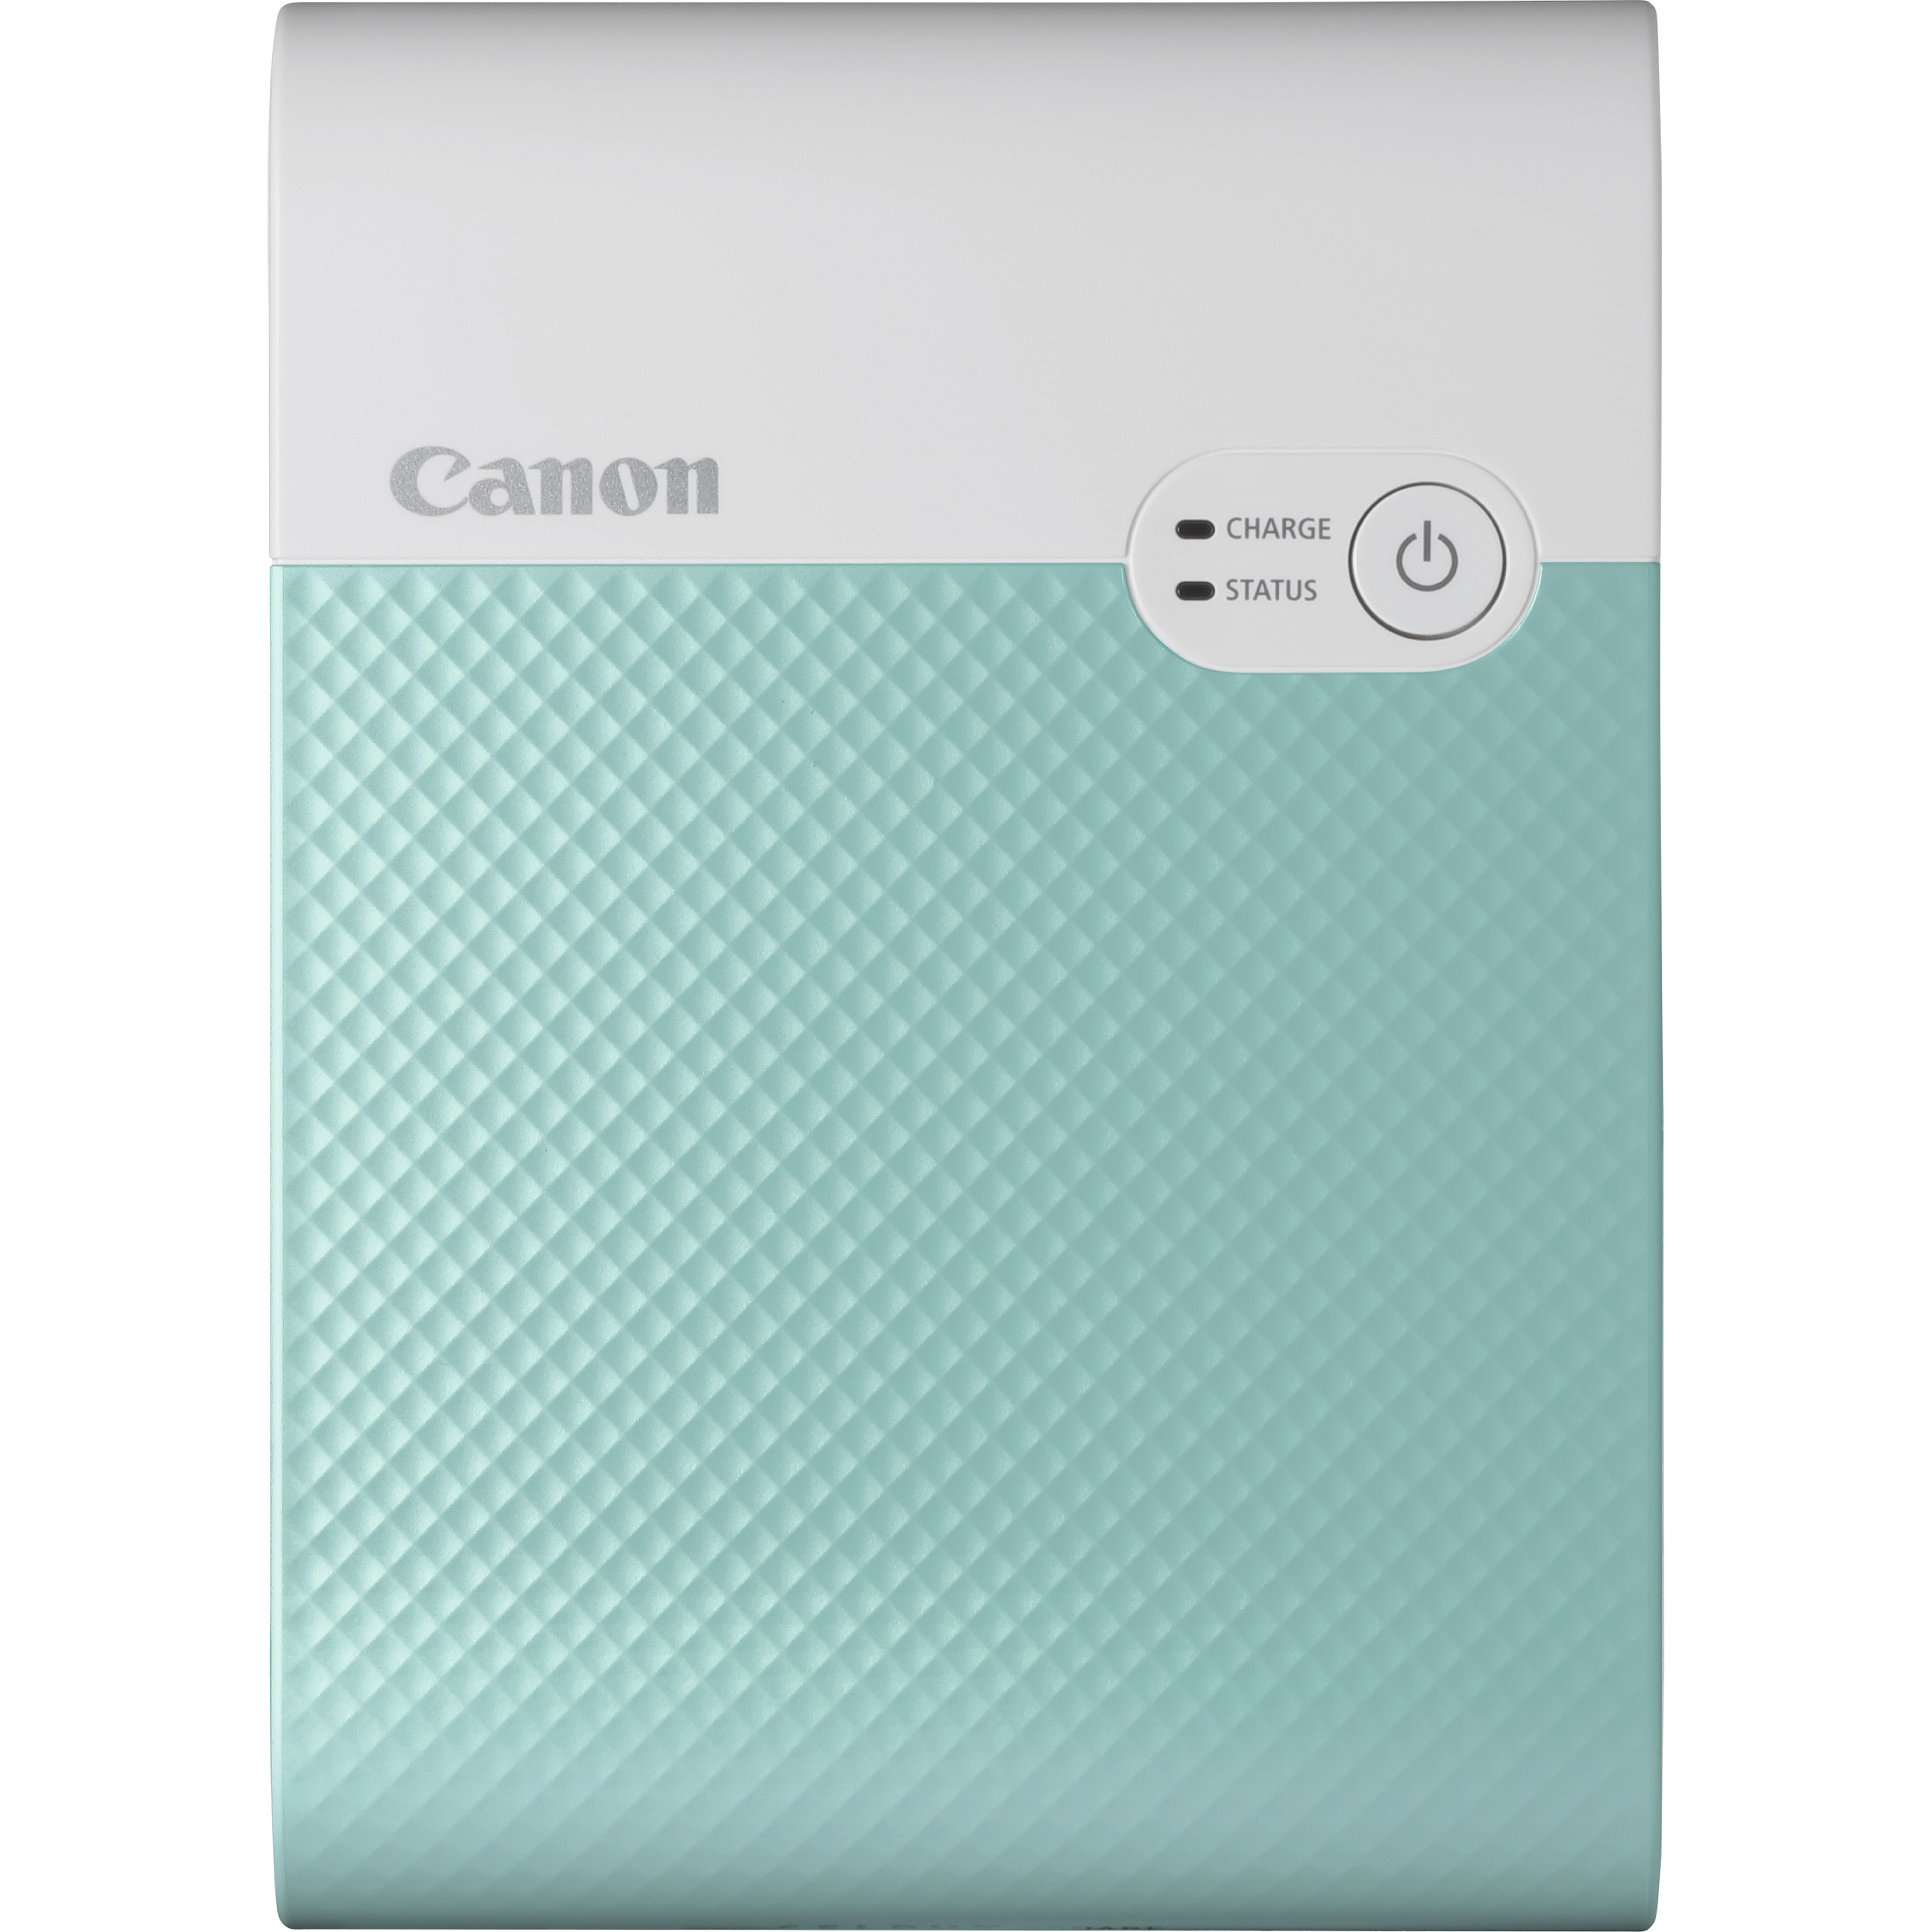 Canon SELPHY Imprimante photo couleur portable sans fil SQUARE QX10, vert menthe - Foto 1 di 1